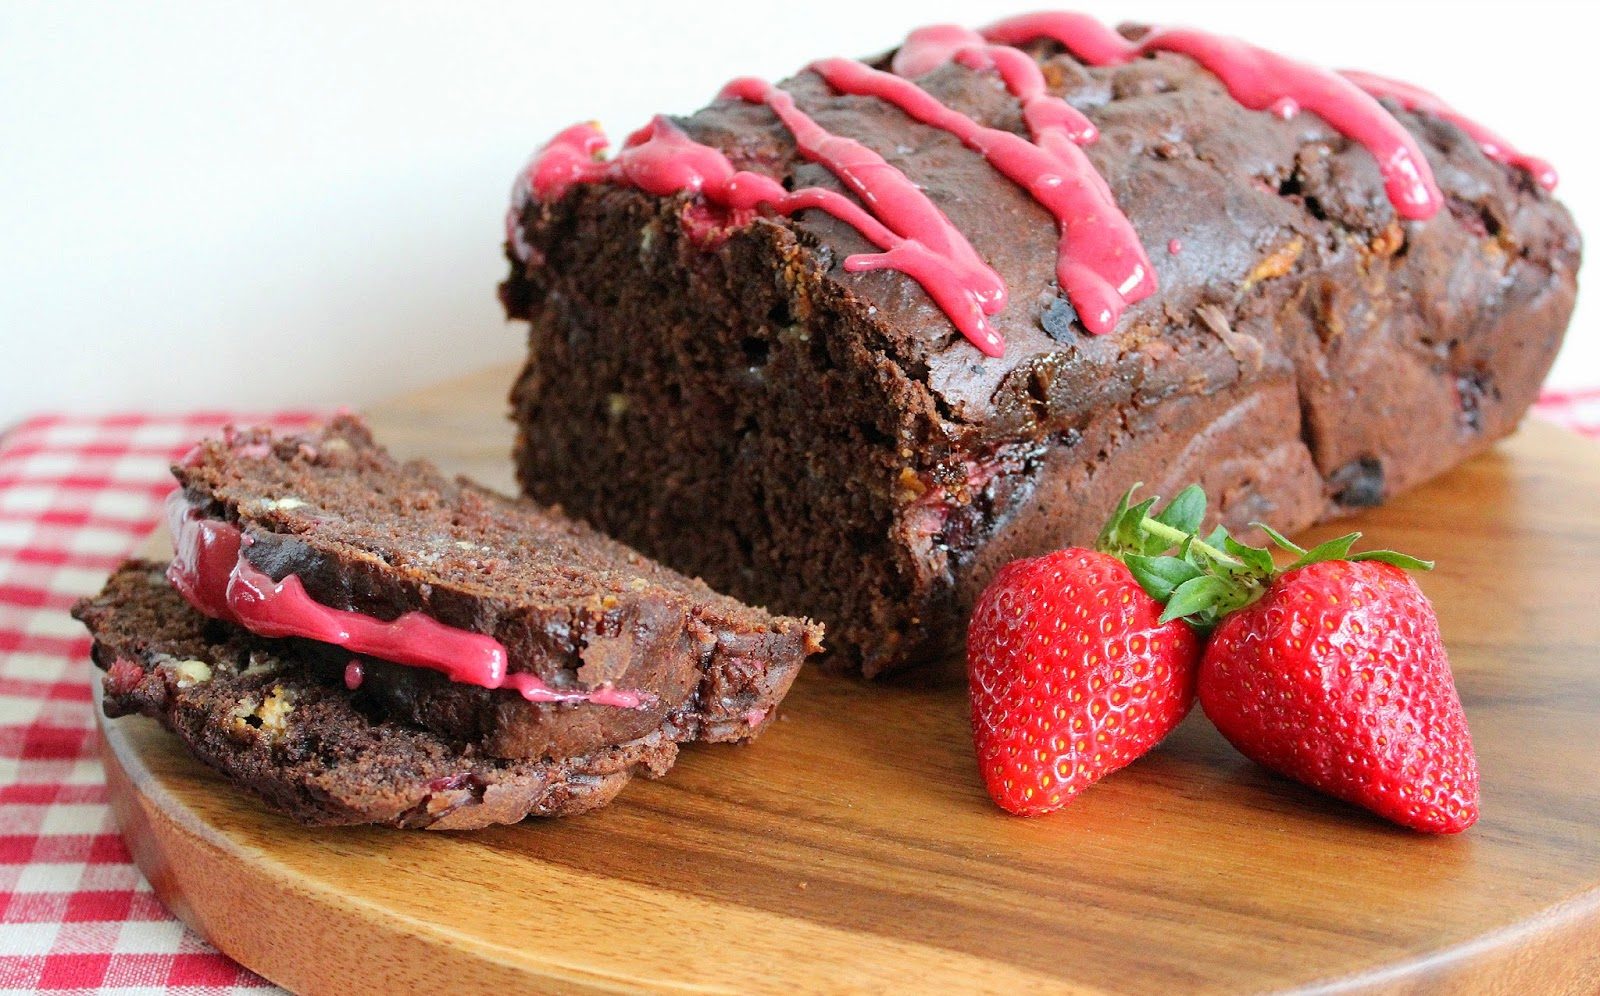 Συνταγή για σοκολατένιο κείκ με κομματάκια σοκολάτας και φράουλας και ένα υπέροχο και εύκολο γλάσο φράουλας.